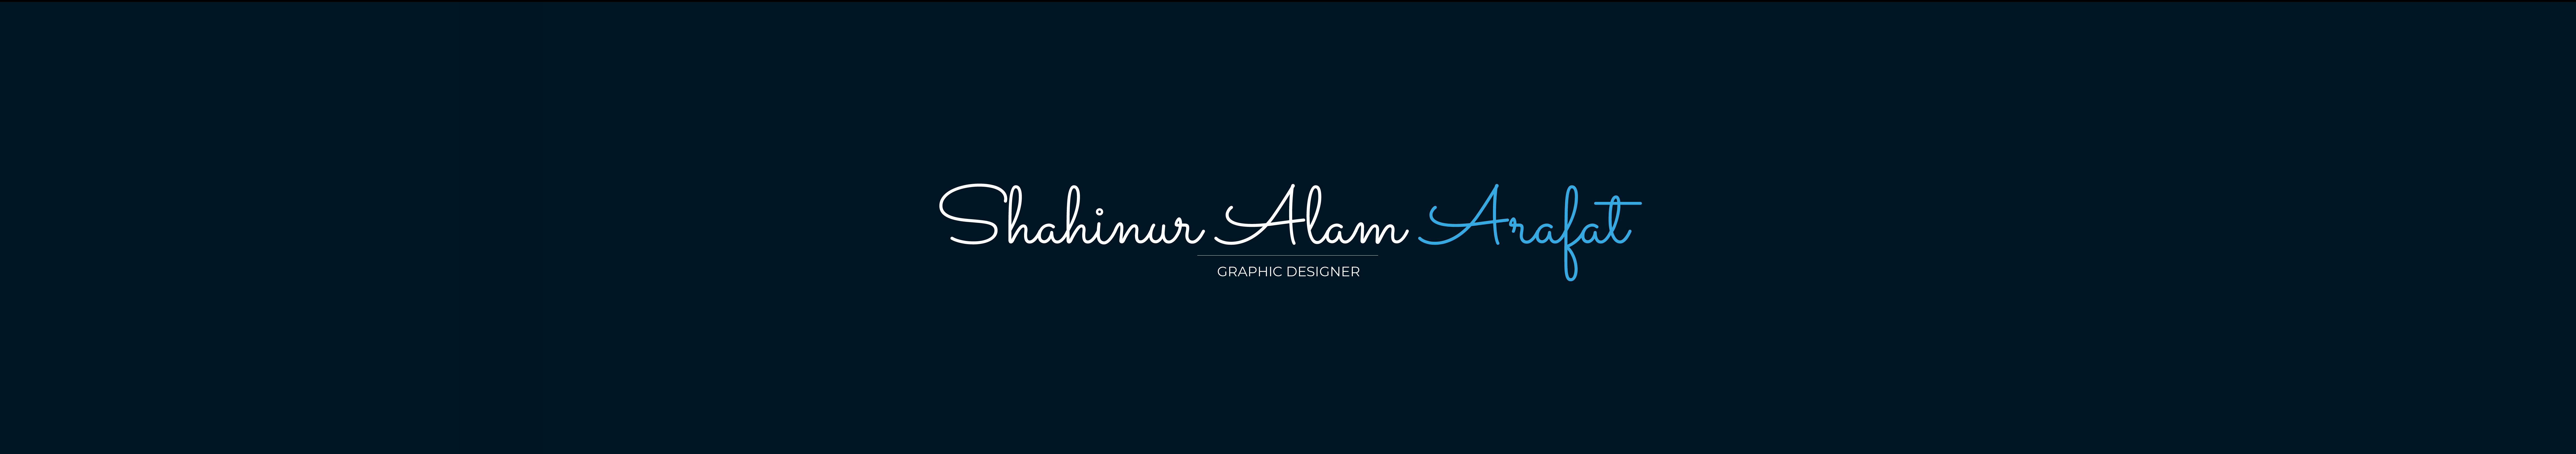 Баннер профиля Shahinur Alam Arafat